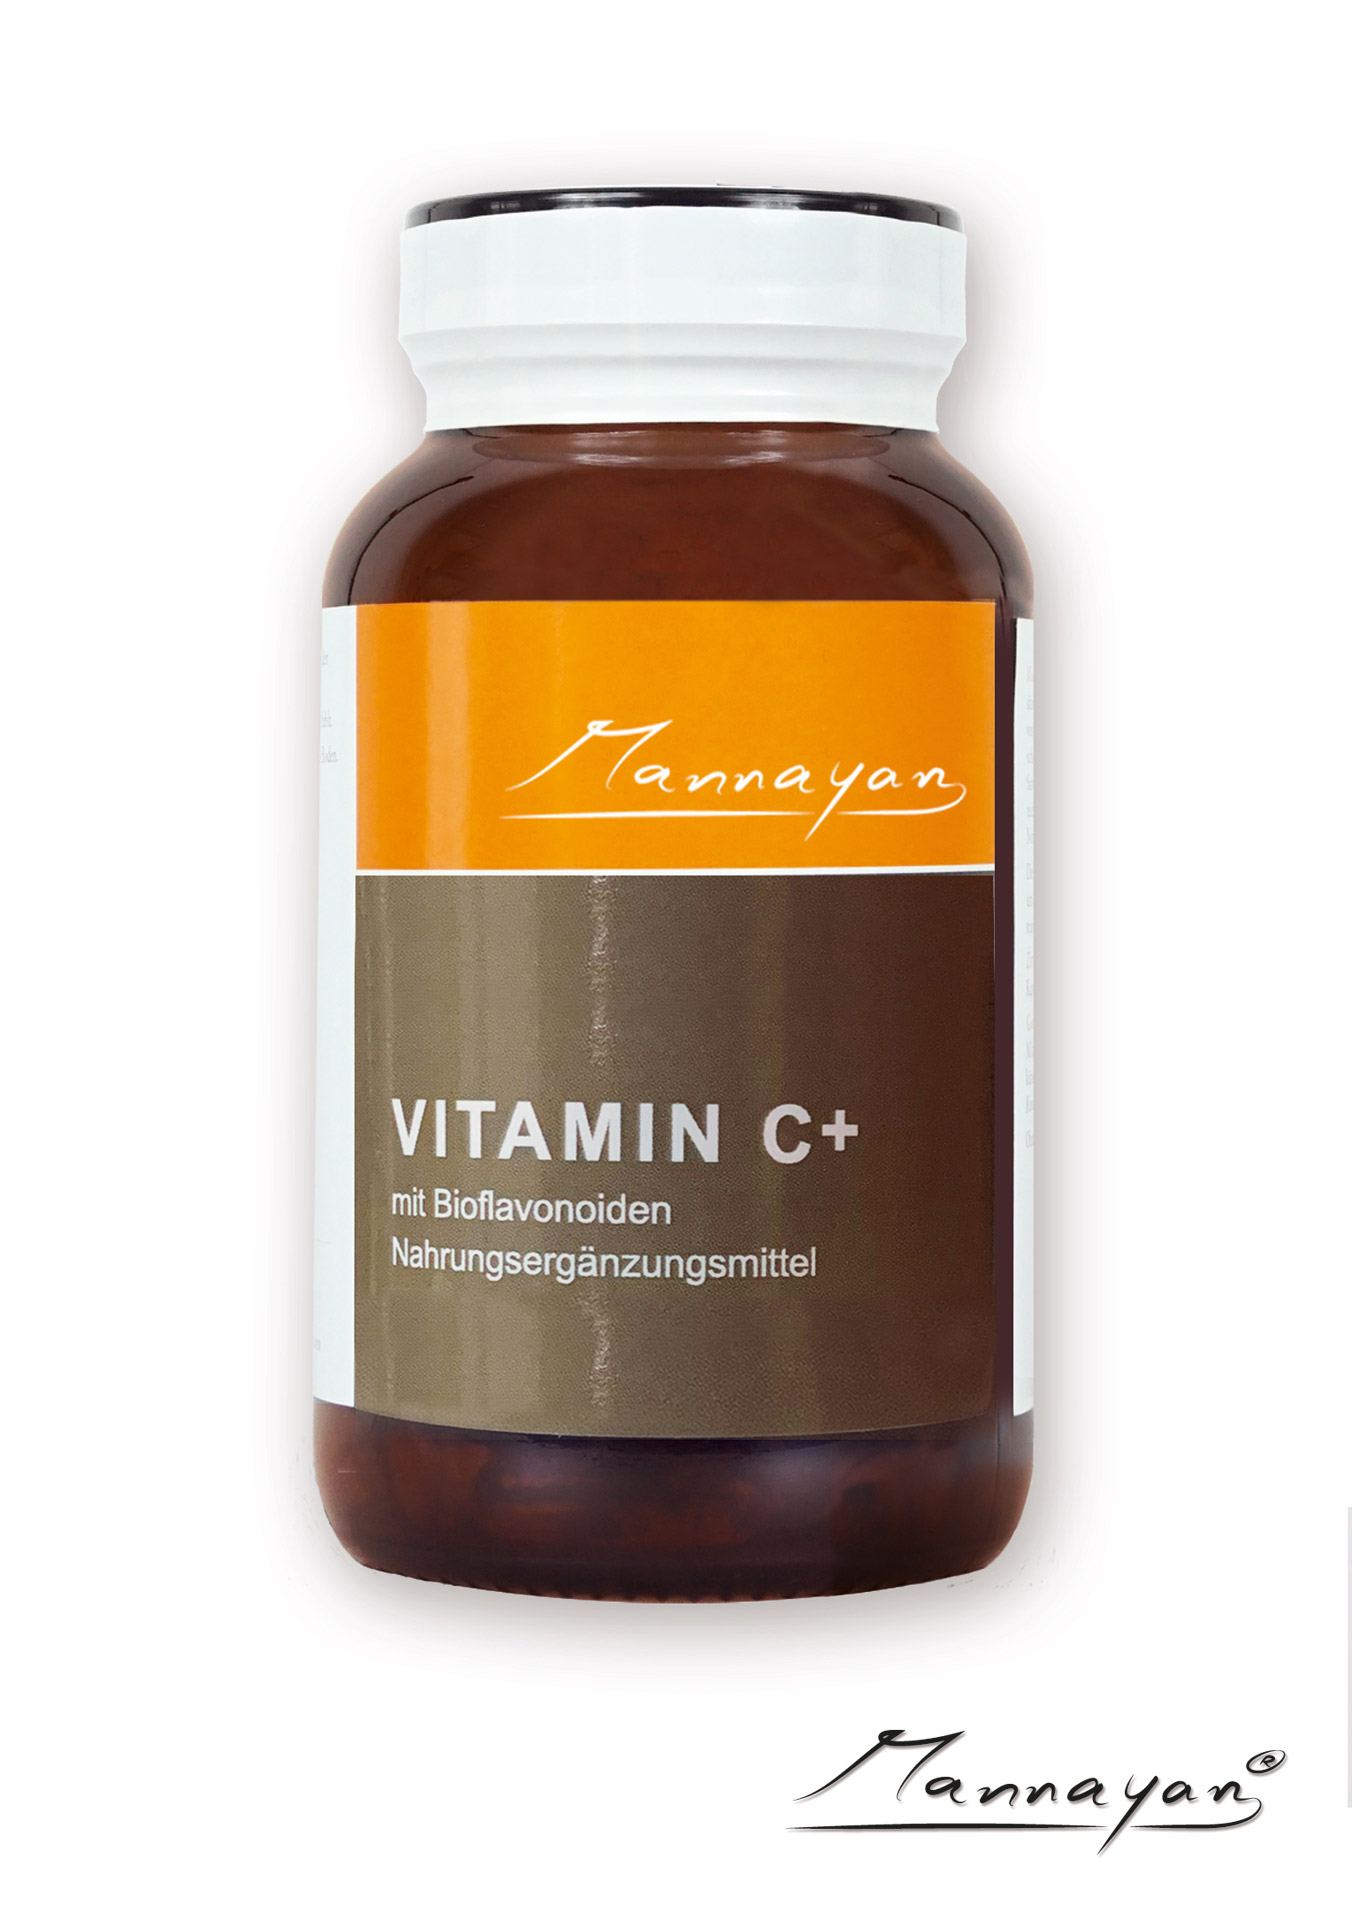 Mannayan VITAMINE C+ (120 tabletten)